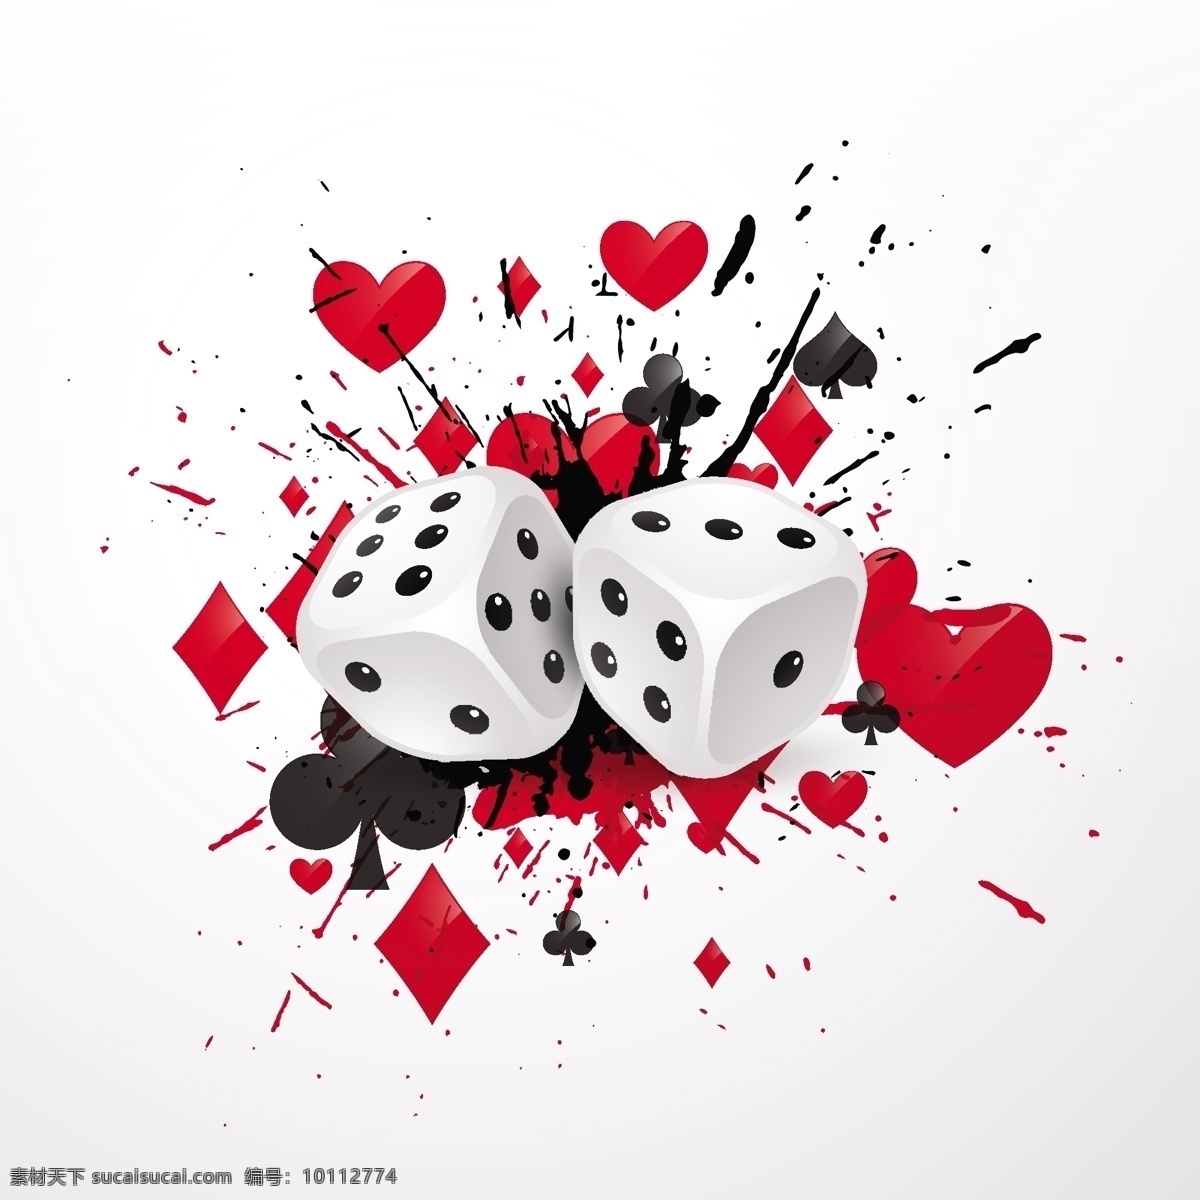 背景 赌场 骰子 心 卡 红 色斑 钻石 垃圾 黑 游戏 形状 油墨 成功 赢家 立方体 白色 飞溅 玩扑克